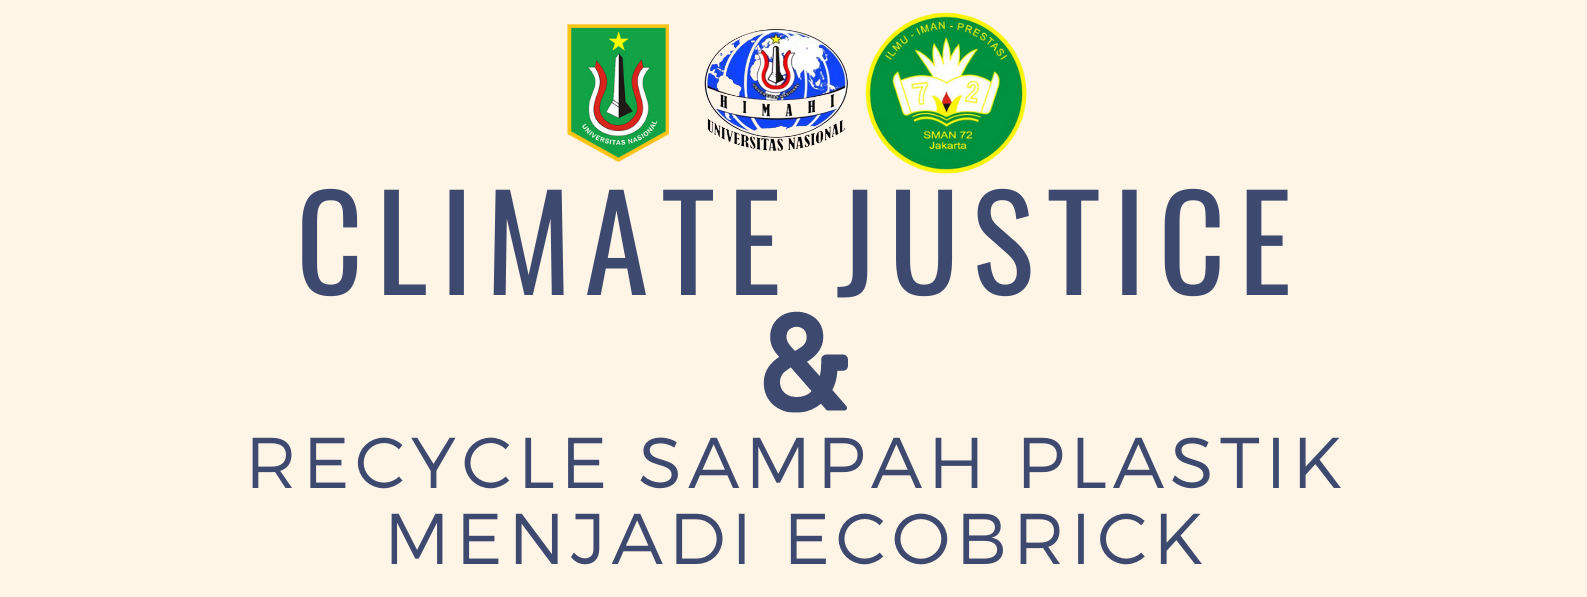 SOSIALISASI PENGANDIAN MASYARAKAT DI SMA 72 “Climate Justice Melalui Pengelahan Sampah Plastik Menjadi Ecobrick”